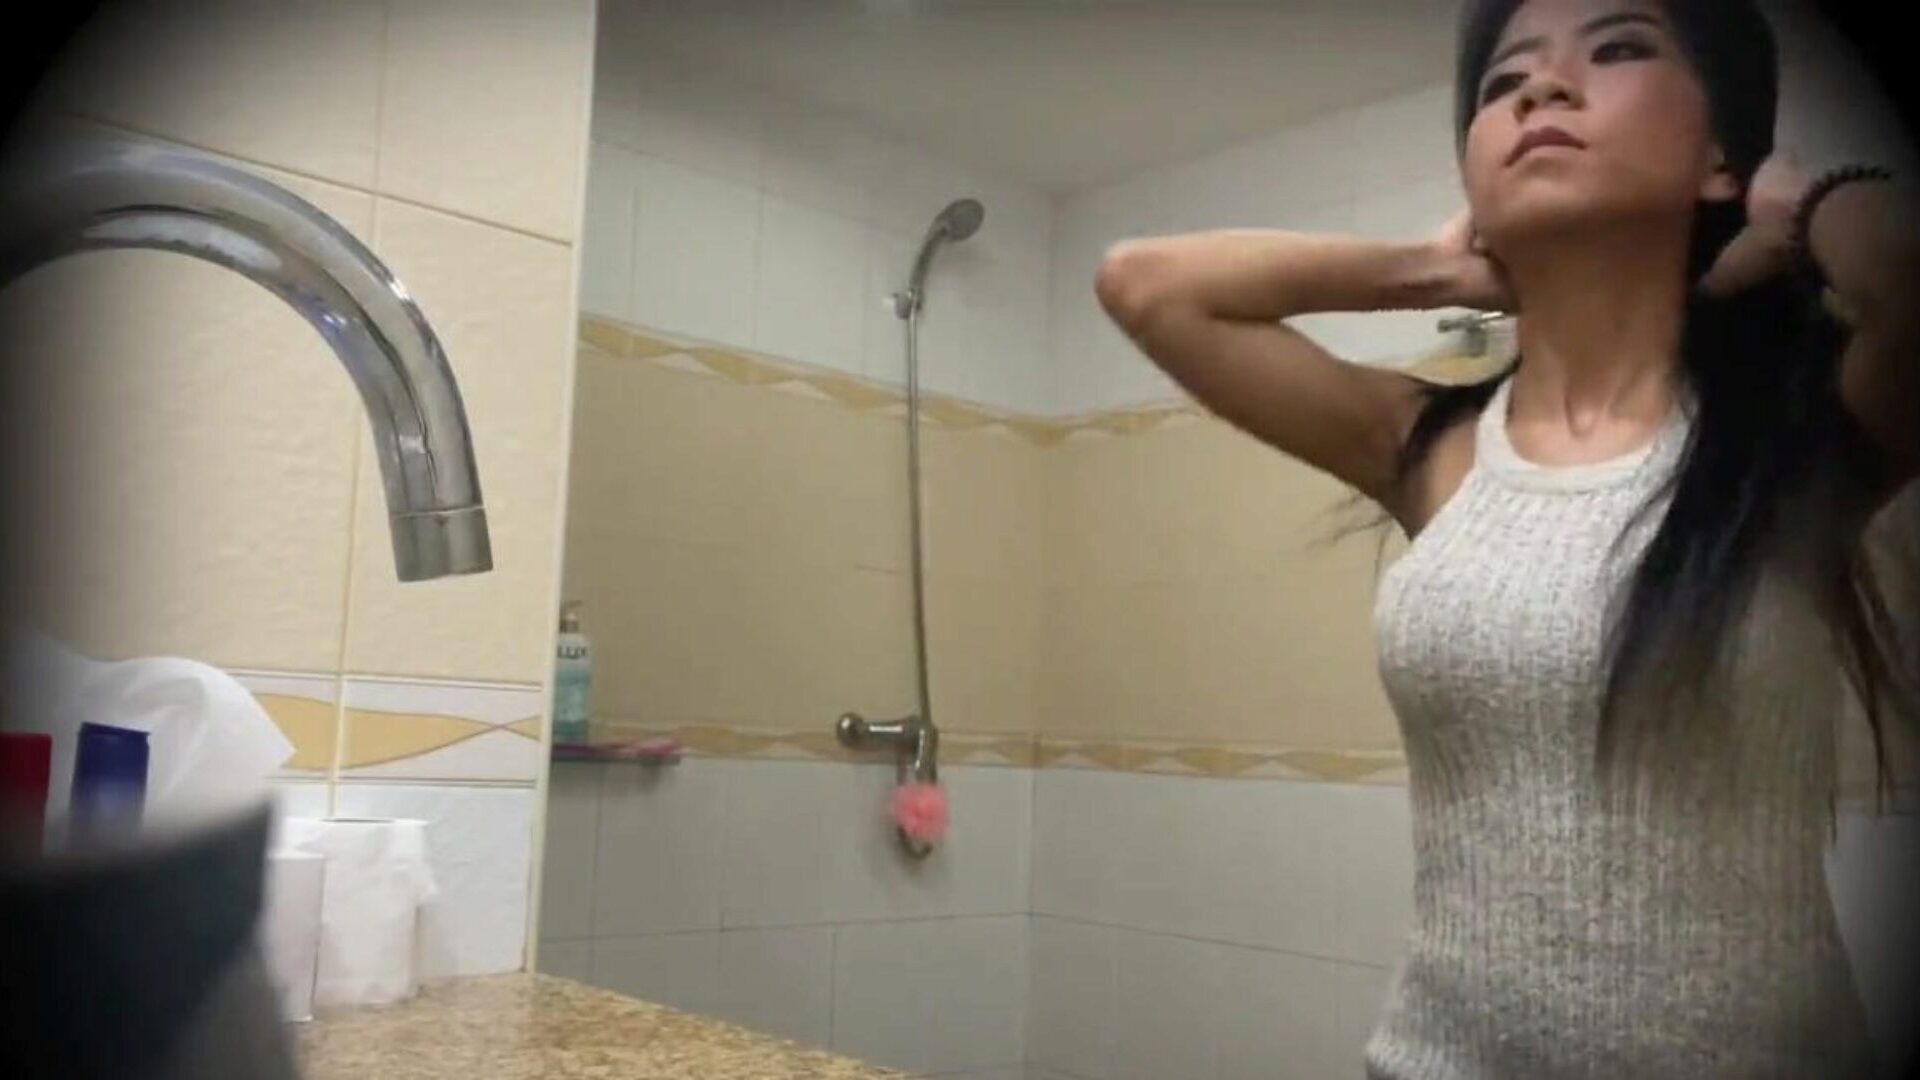 magnifique prostituée thaïlandaise baisée sur une caméra cachée: porno bf regarder magnifique prostituée thaïlandaise baisée sur une vidéo de caméra cachée sur xhamster - la sélection ultime de vidéos de tube porno gonzo hd teen asiatique gratuit pour tous